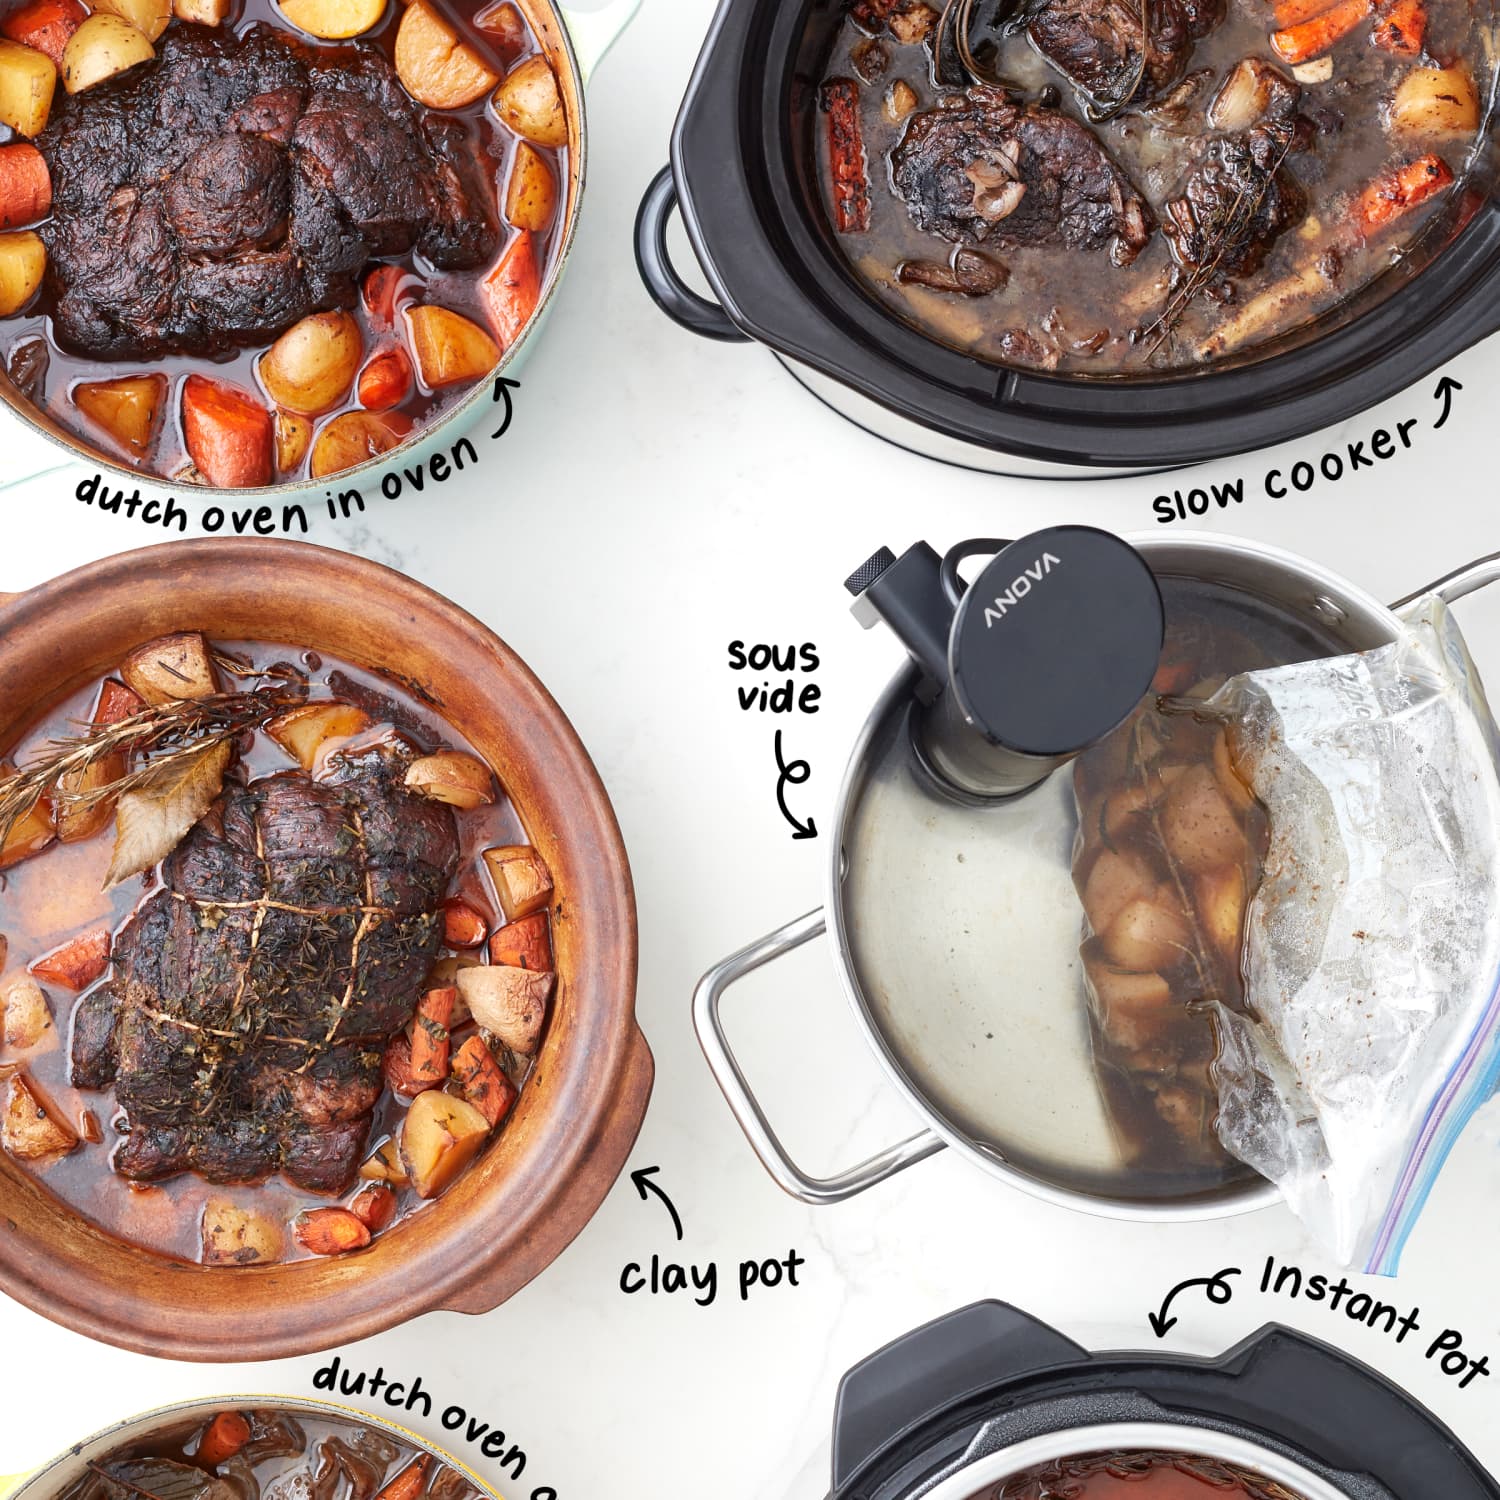 Cooker Showdown: Instant Pot versus Crock Pot versus Dutch Oven